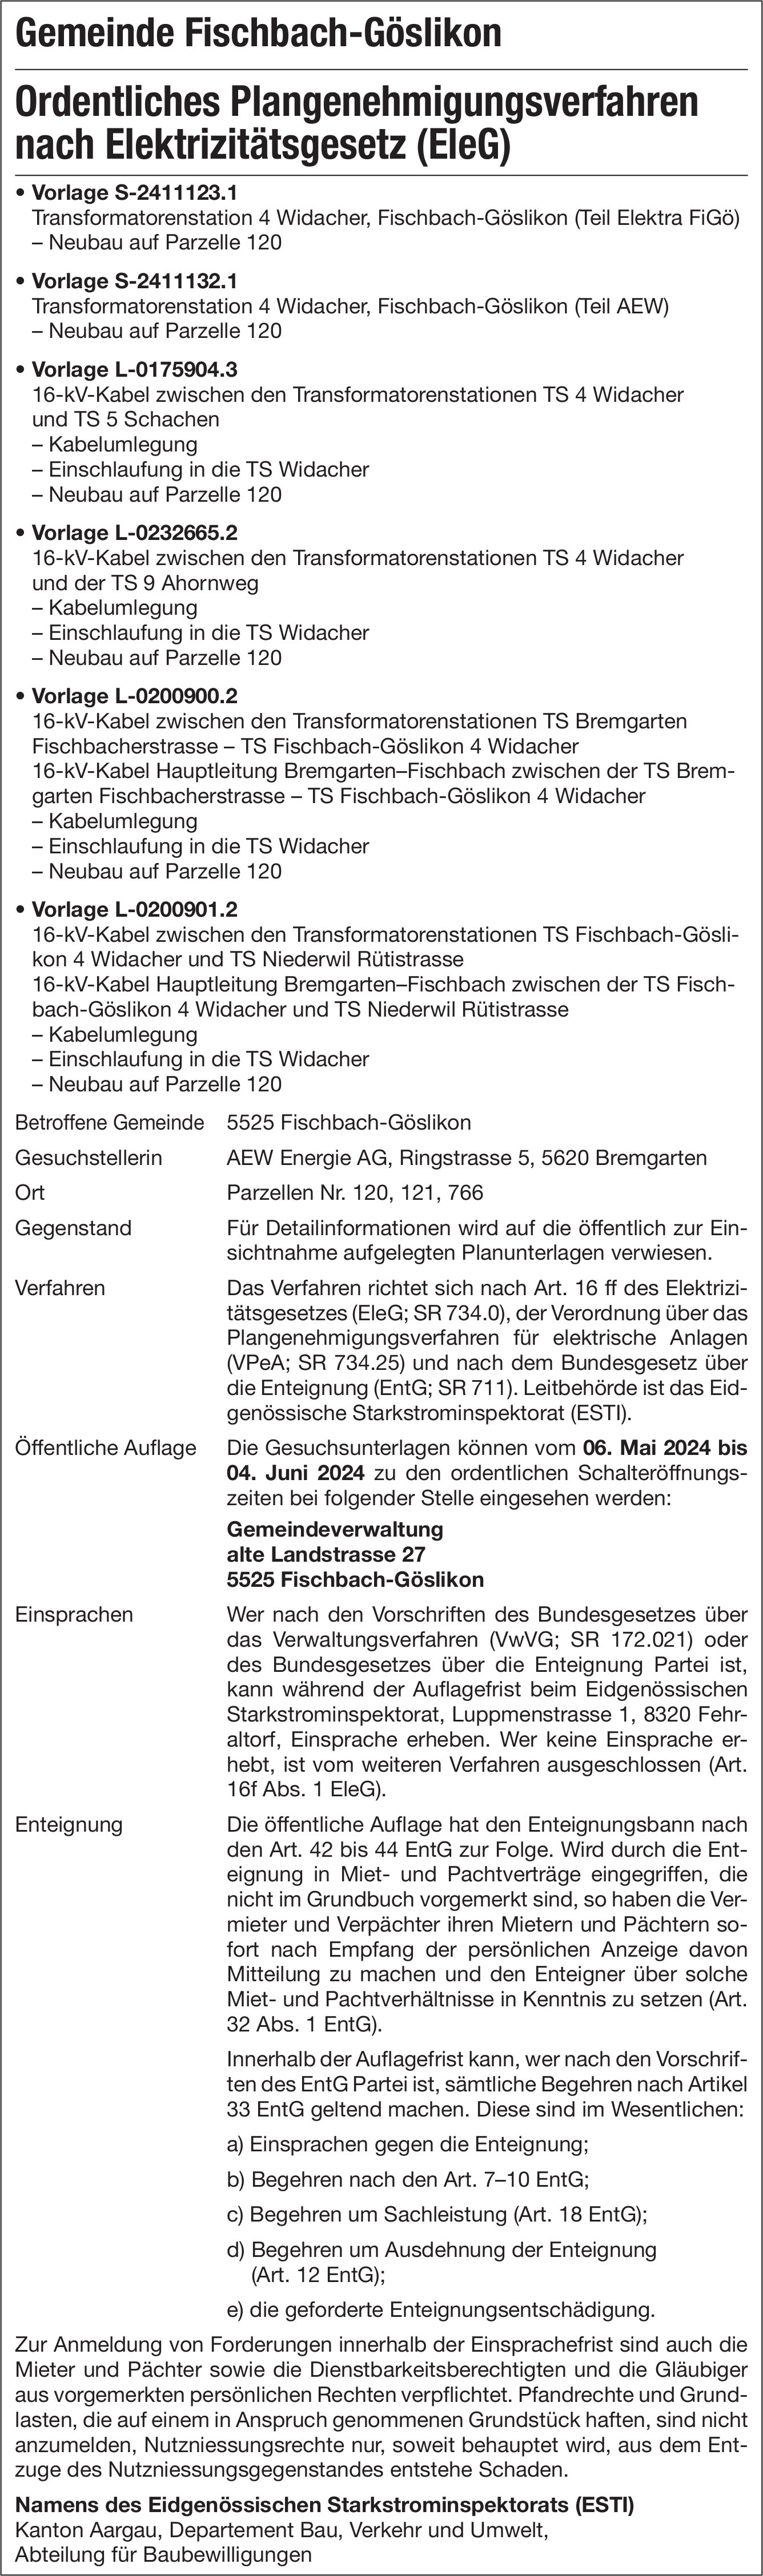 Baugesuche, Fischbach-Göslikon - Ordentliches Plangenehmigungsverfahren nach Elektrizitätsgesetz (EleG)